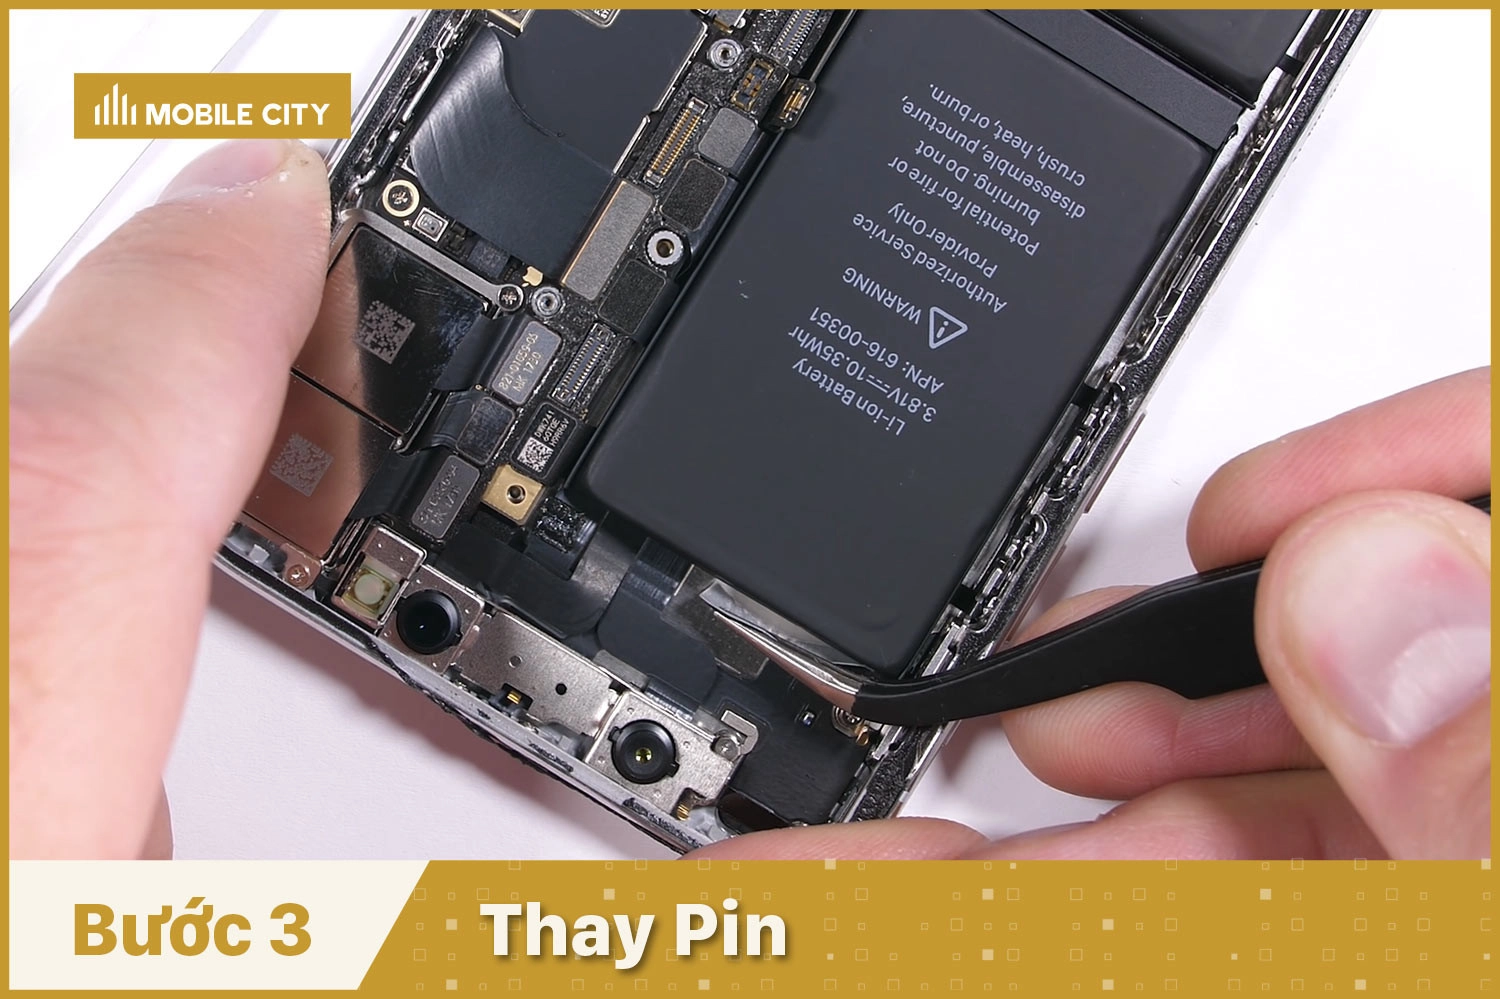 Thay Pin iPhone X, thay Pin